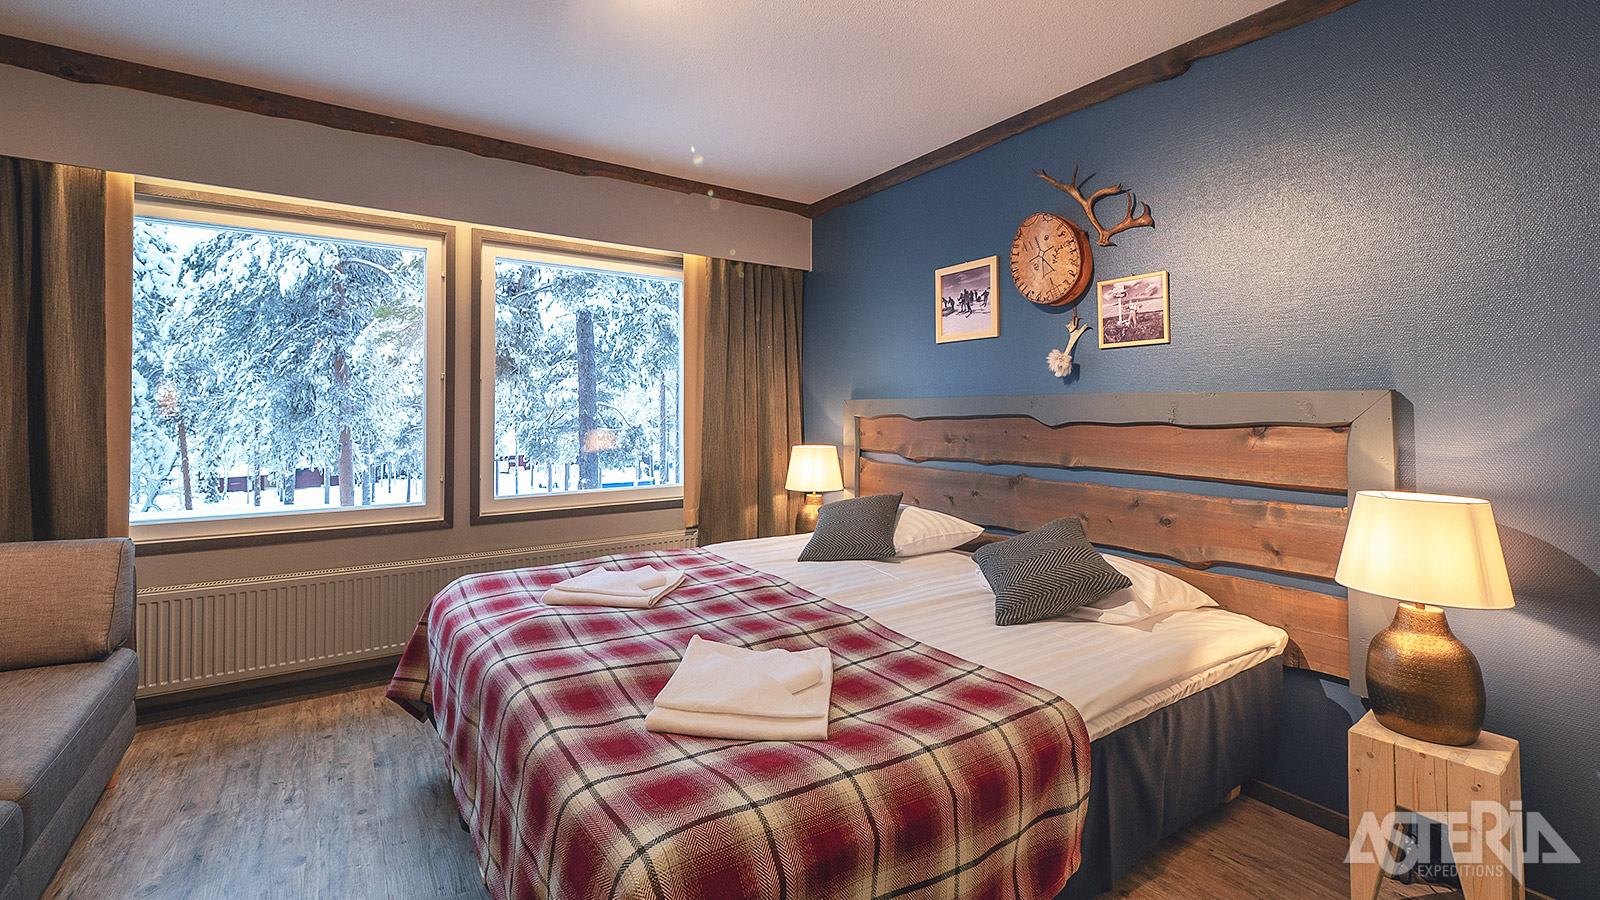 Je kan er overnachten in hotelkamers of in gezellige chalets met o.a. een woonruimte, aparte slaapkamer(s), haard en sauna